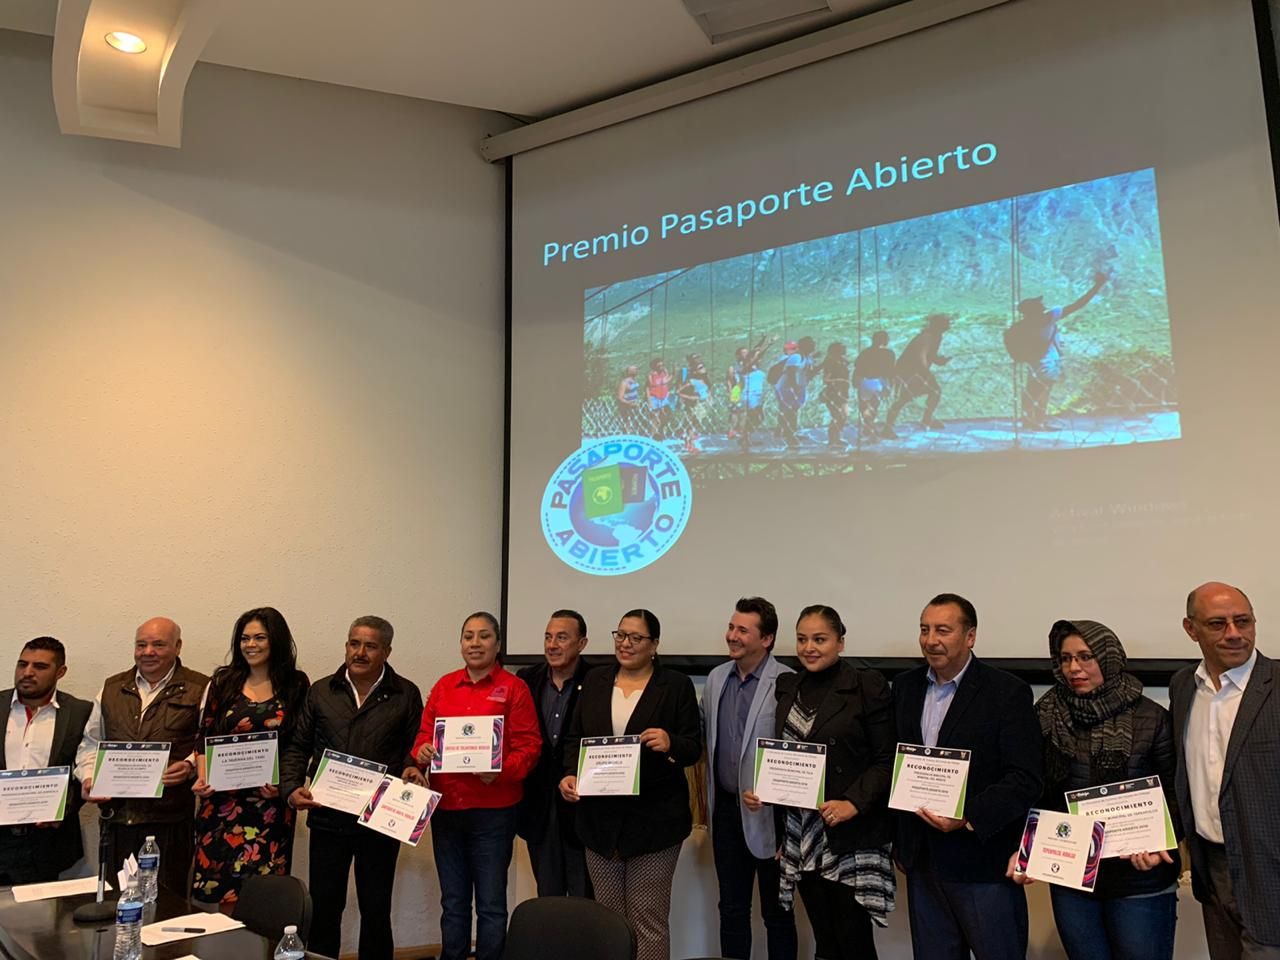 Resultados del Premio Pasaporte Abierto Hidalgo Mágico 2019